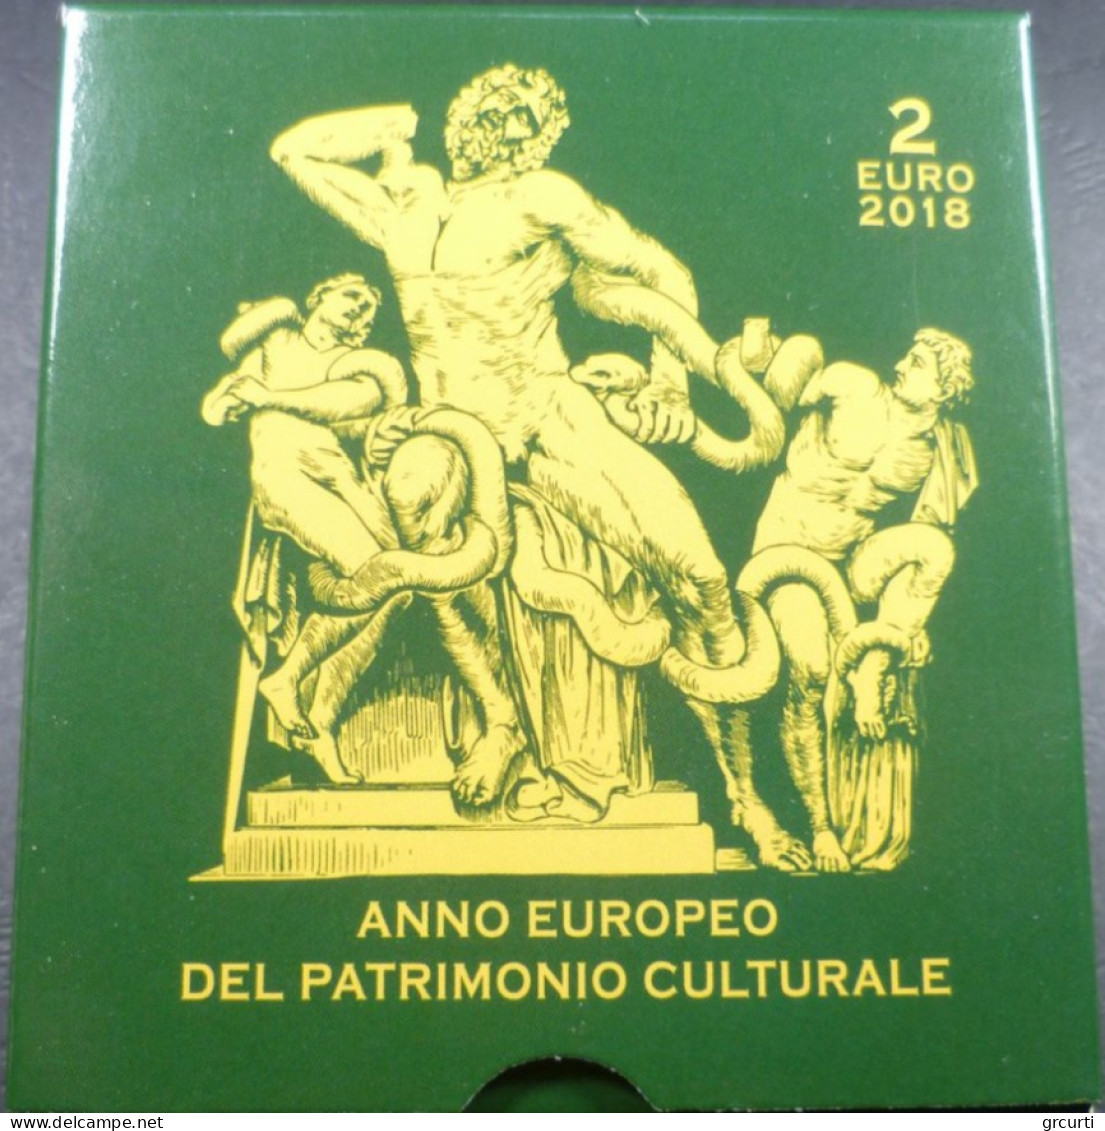 Vaticano - 2 Euro 2018 - Anno Europeo del Patrimonio Culturale - UC# 105